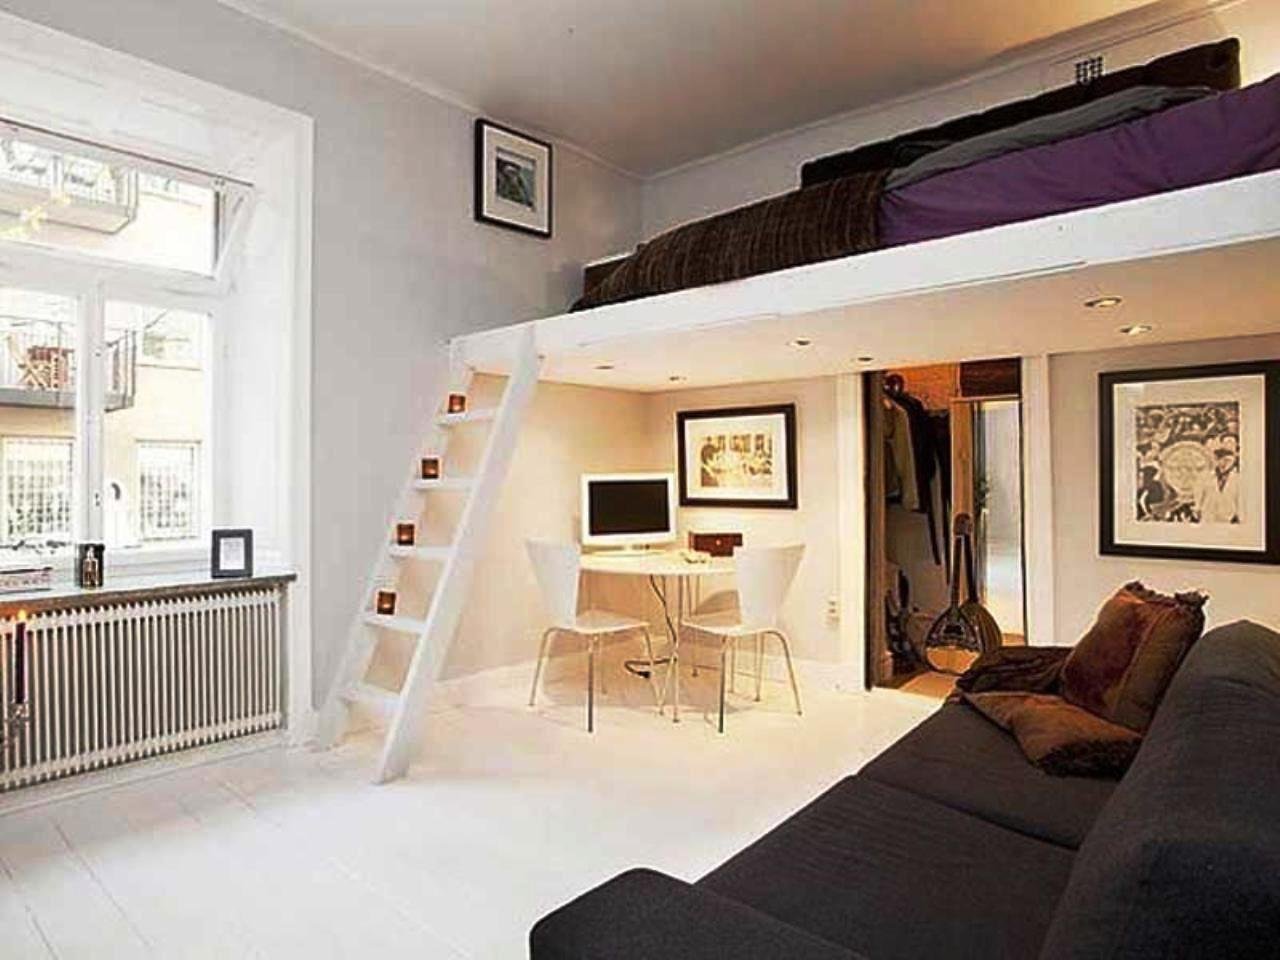 20 шикарных идей как двухъярусная кровать может сэкономить место в квартире